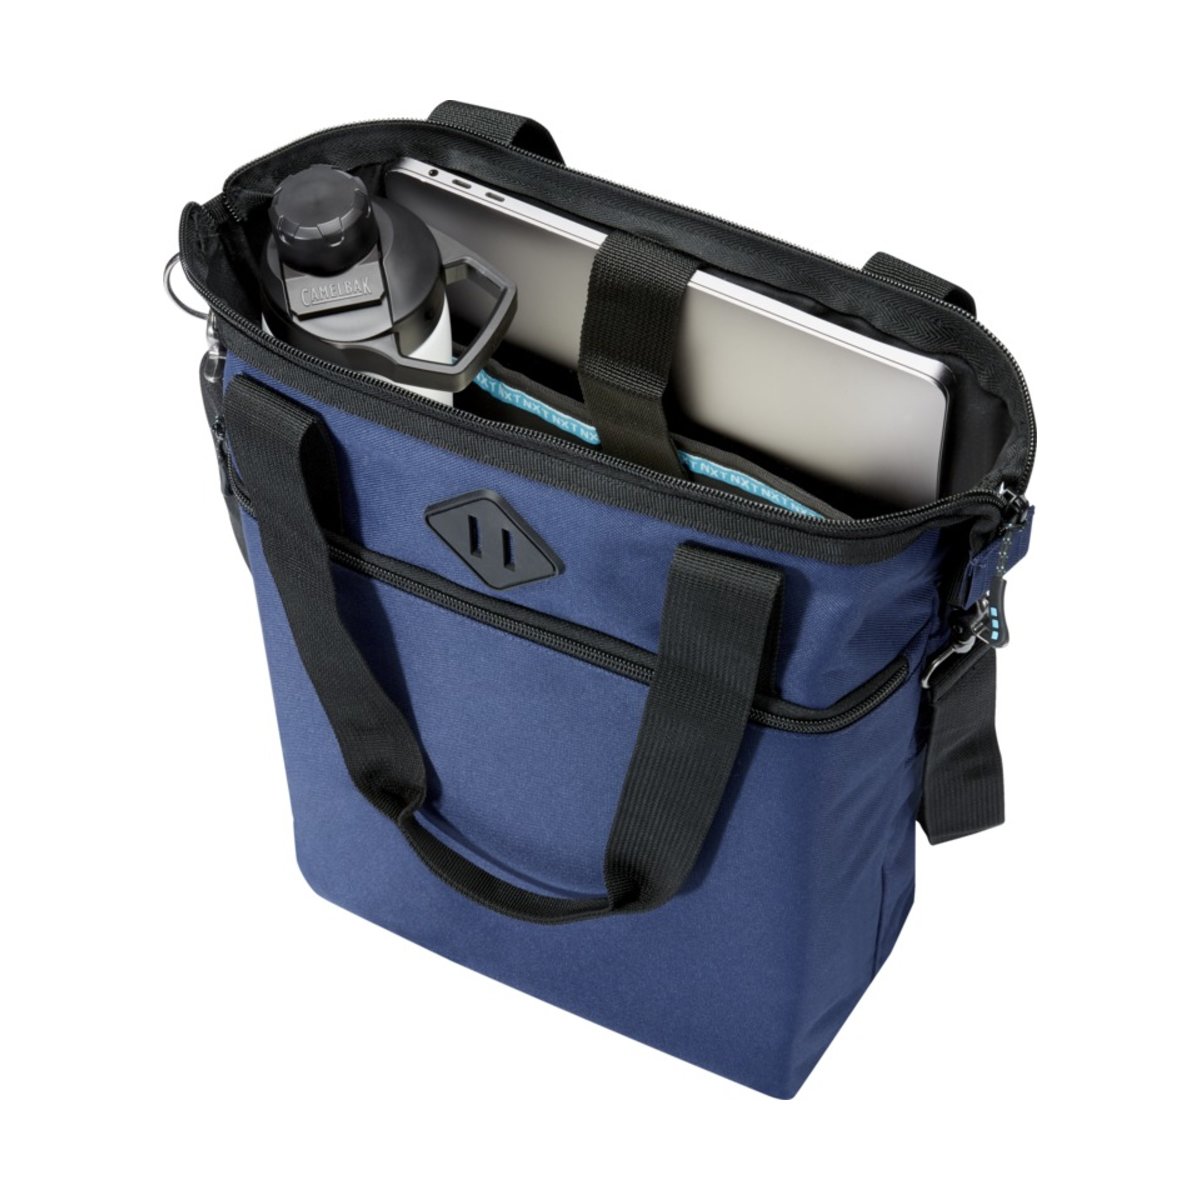 Repreve® Ocean torba z długimi uchwytami na laptopa 15 cali o pojemności 12 l z plastiku PET z recyklingu z certyfikatem GRS